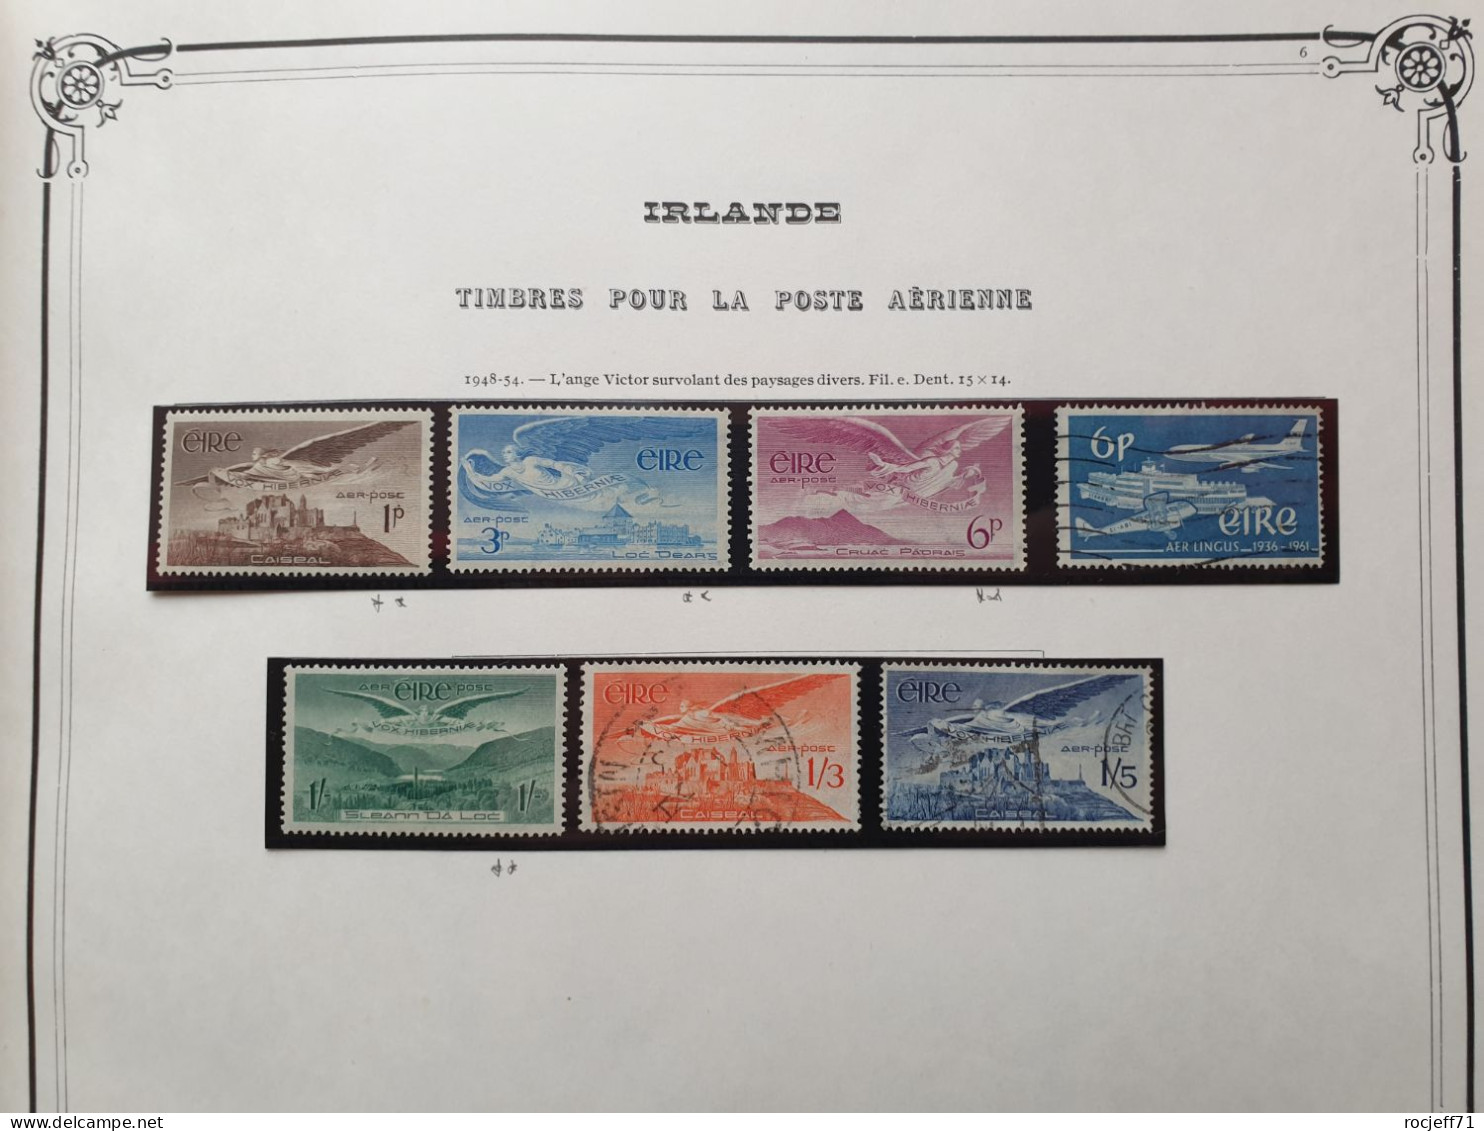 12 - 23 // Irlande - Belle collection entre 1922 et 1974 sur page d'Album - Cote environs 1100 euros  //   36 scans